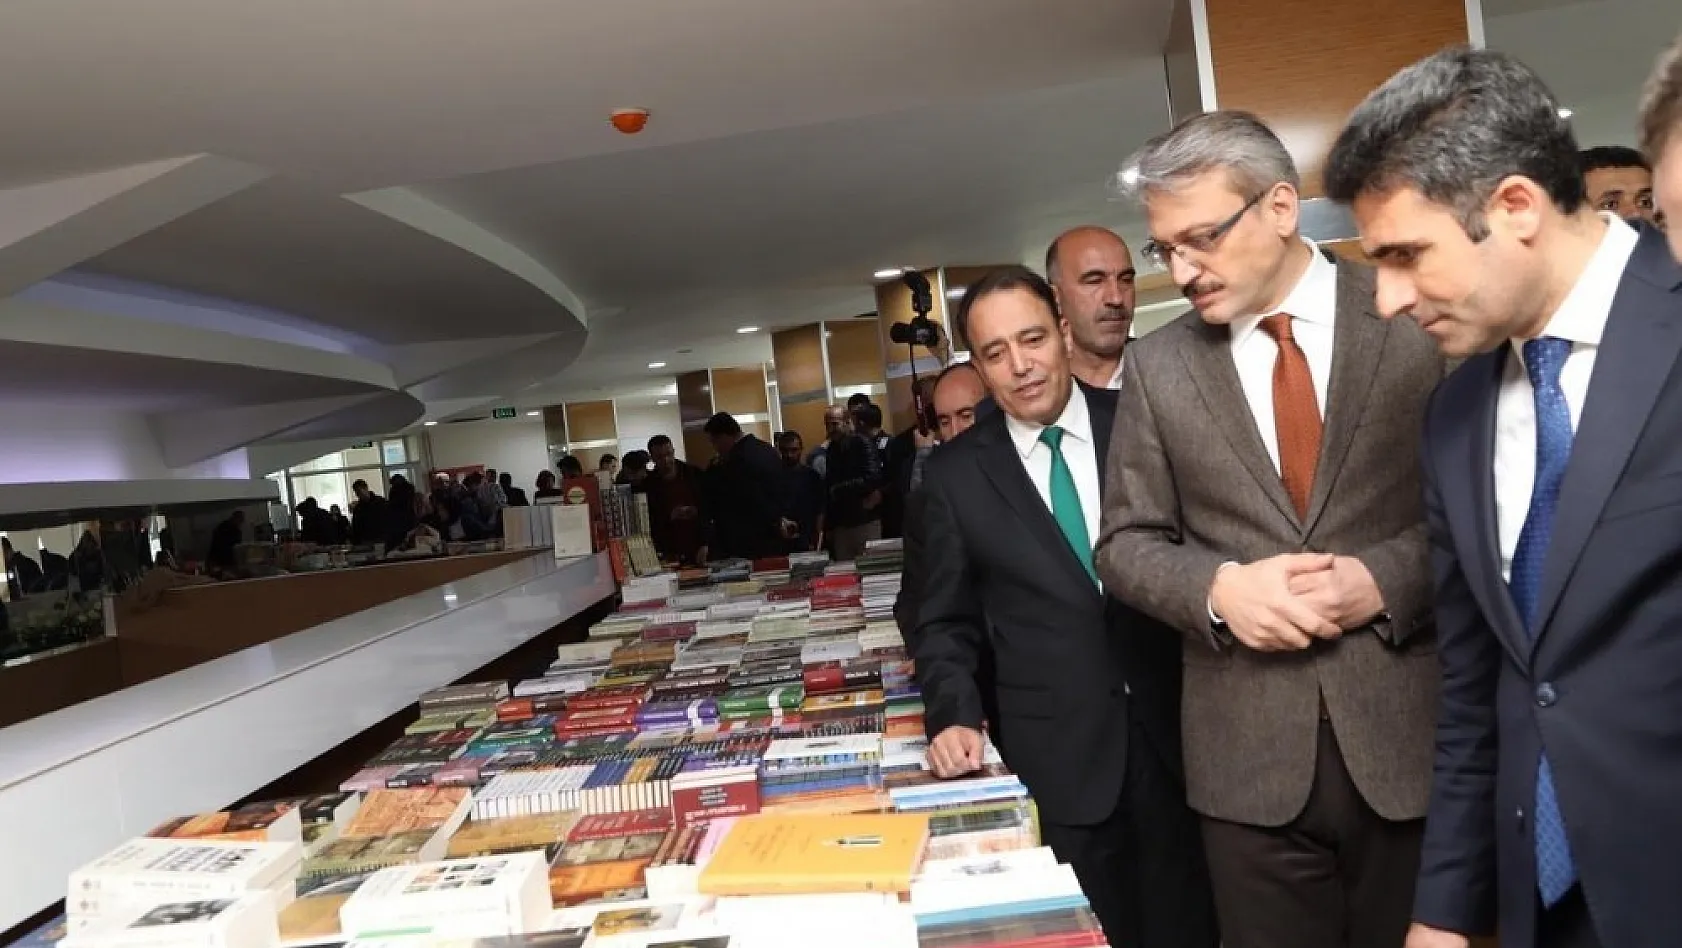 Bingöl Üniversitesi'nde 3. Kitap Fuarı açıldı 